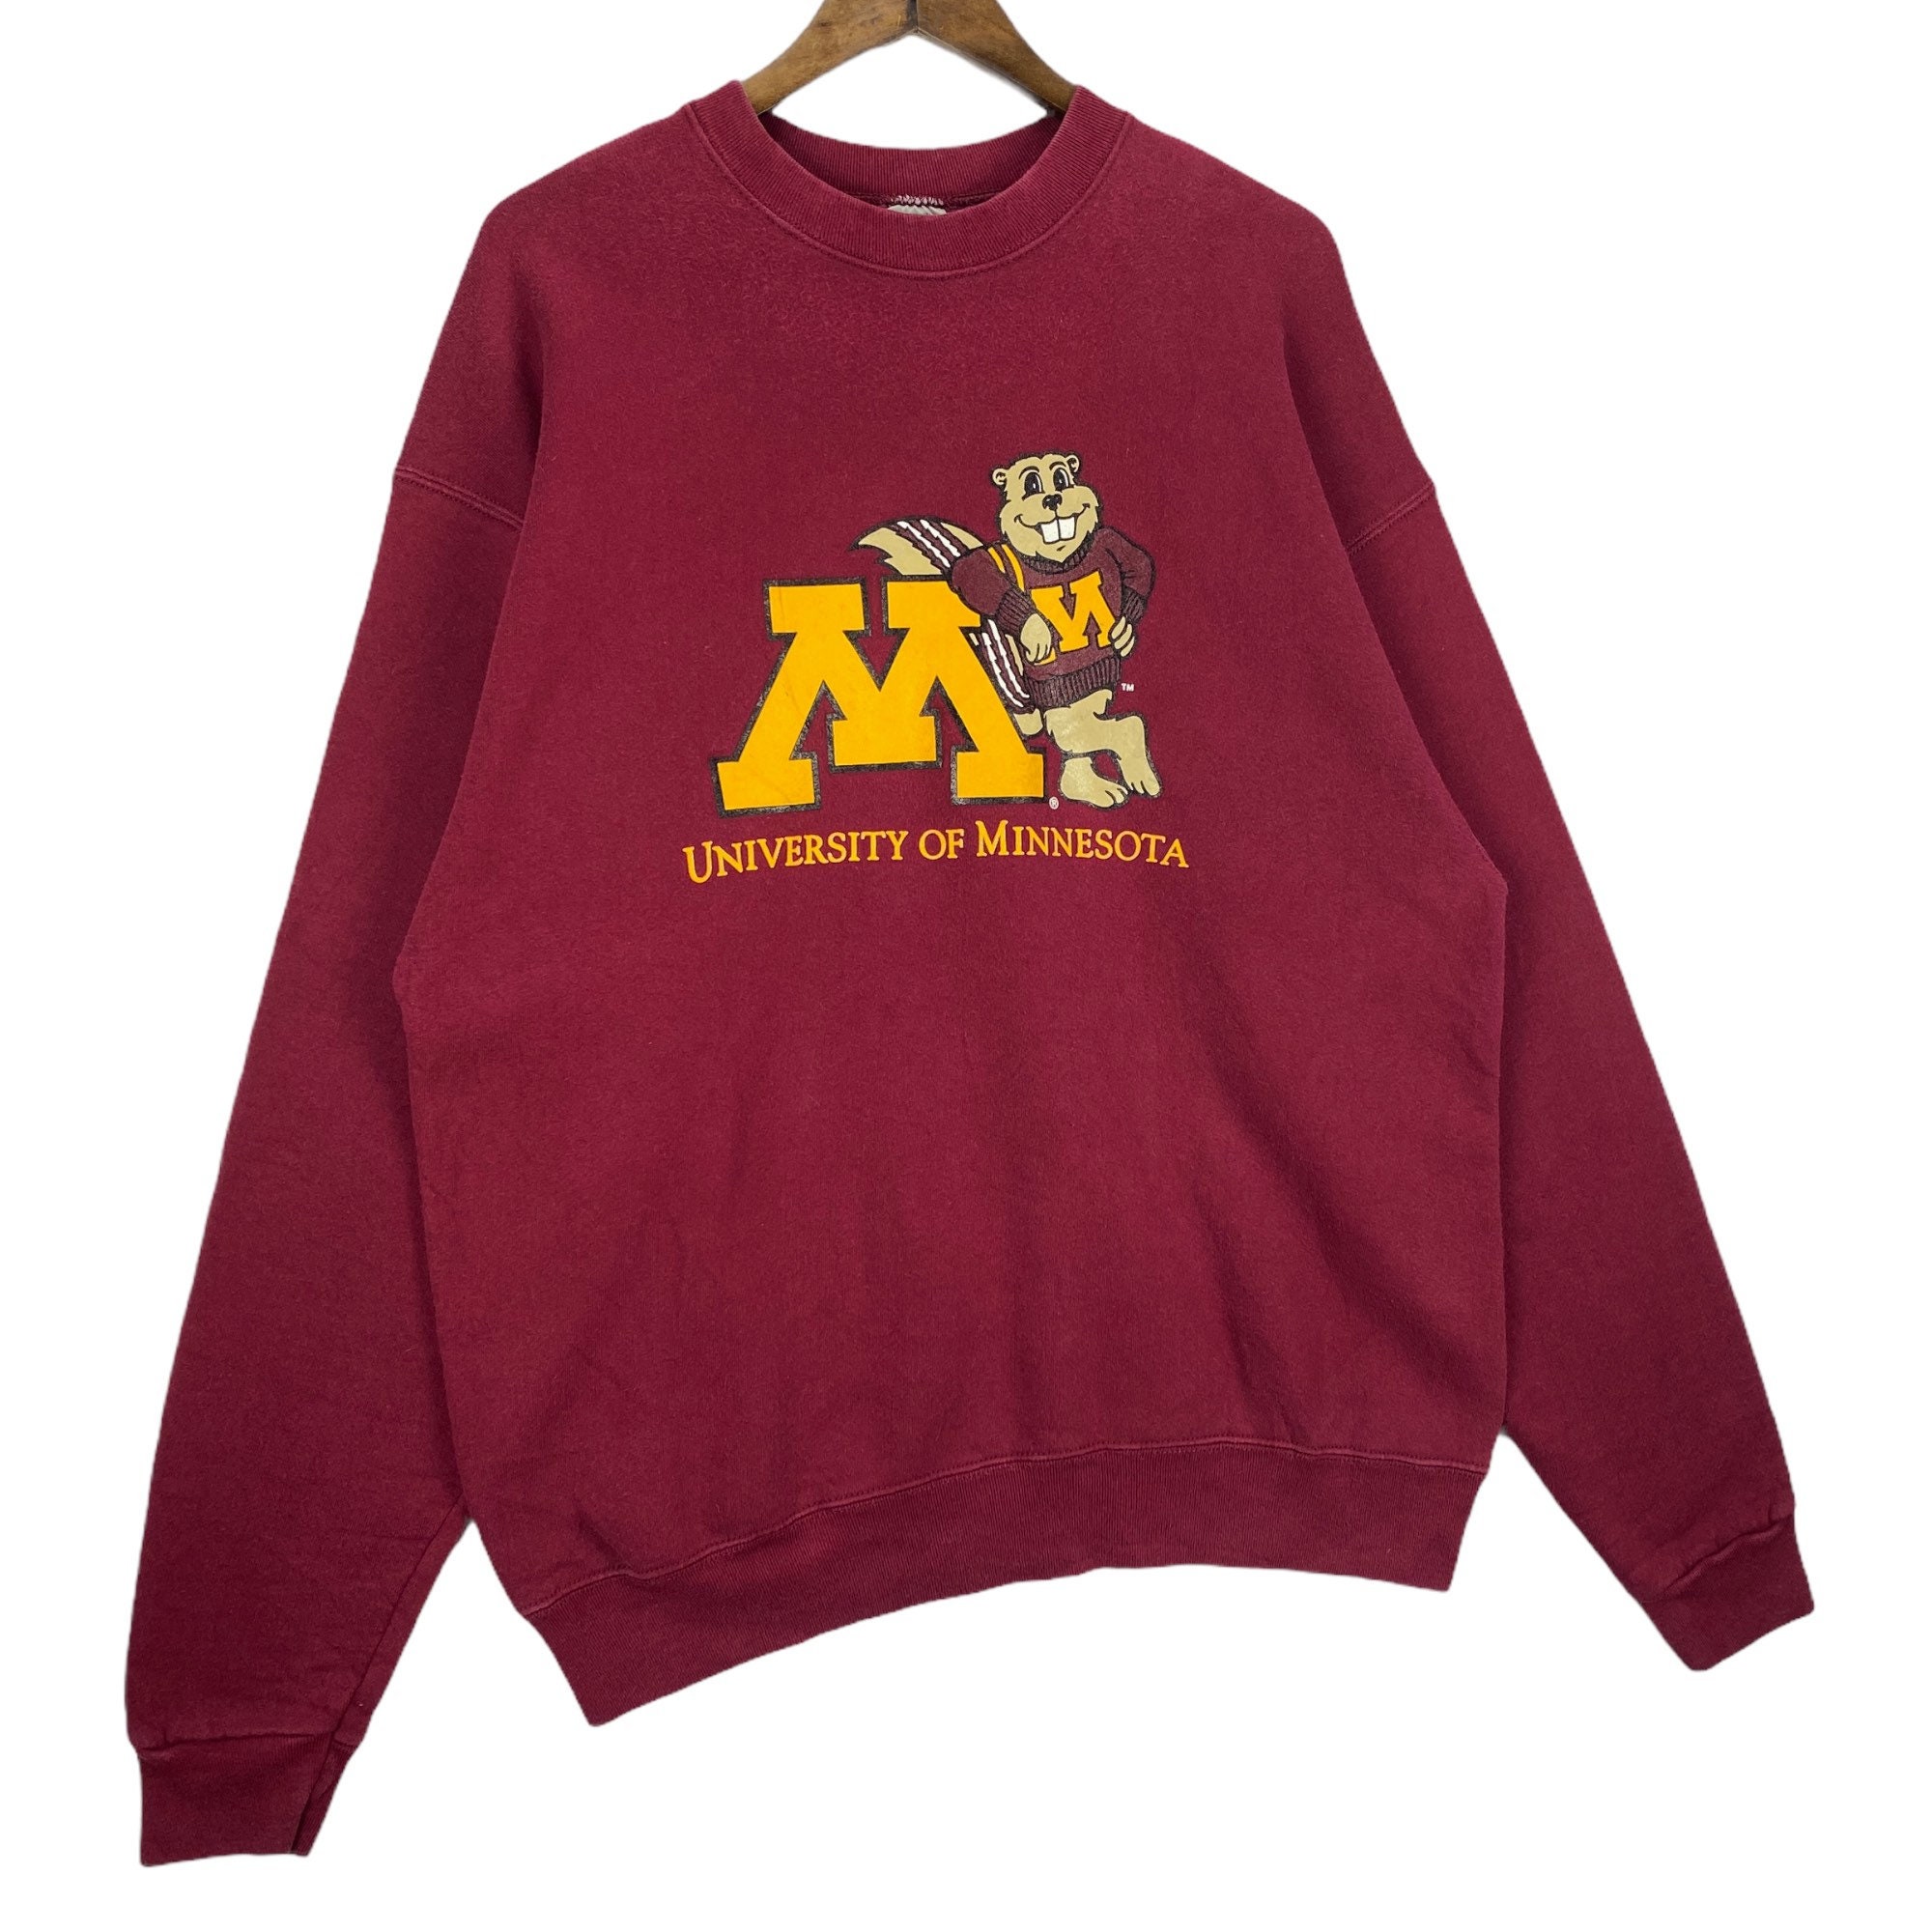 Vintage 90s University of Minnesota Sweatshirt Crewneck Maroon - Etsy UK